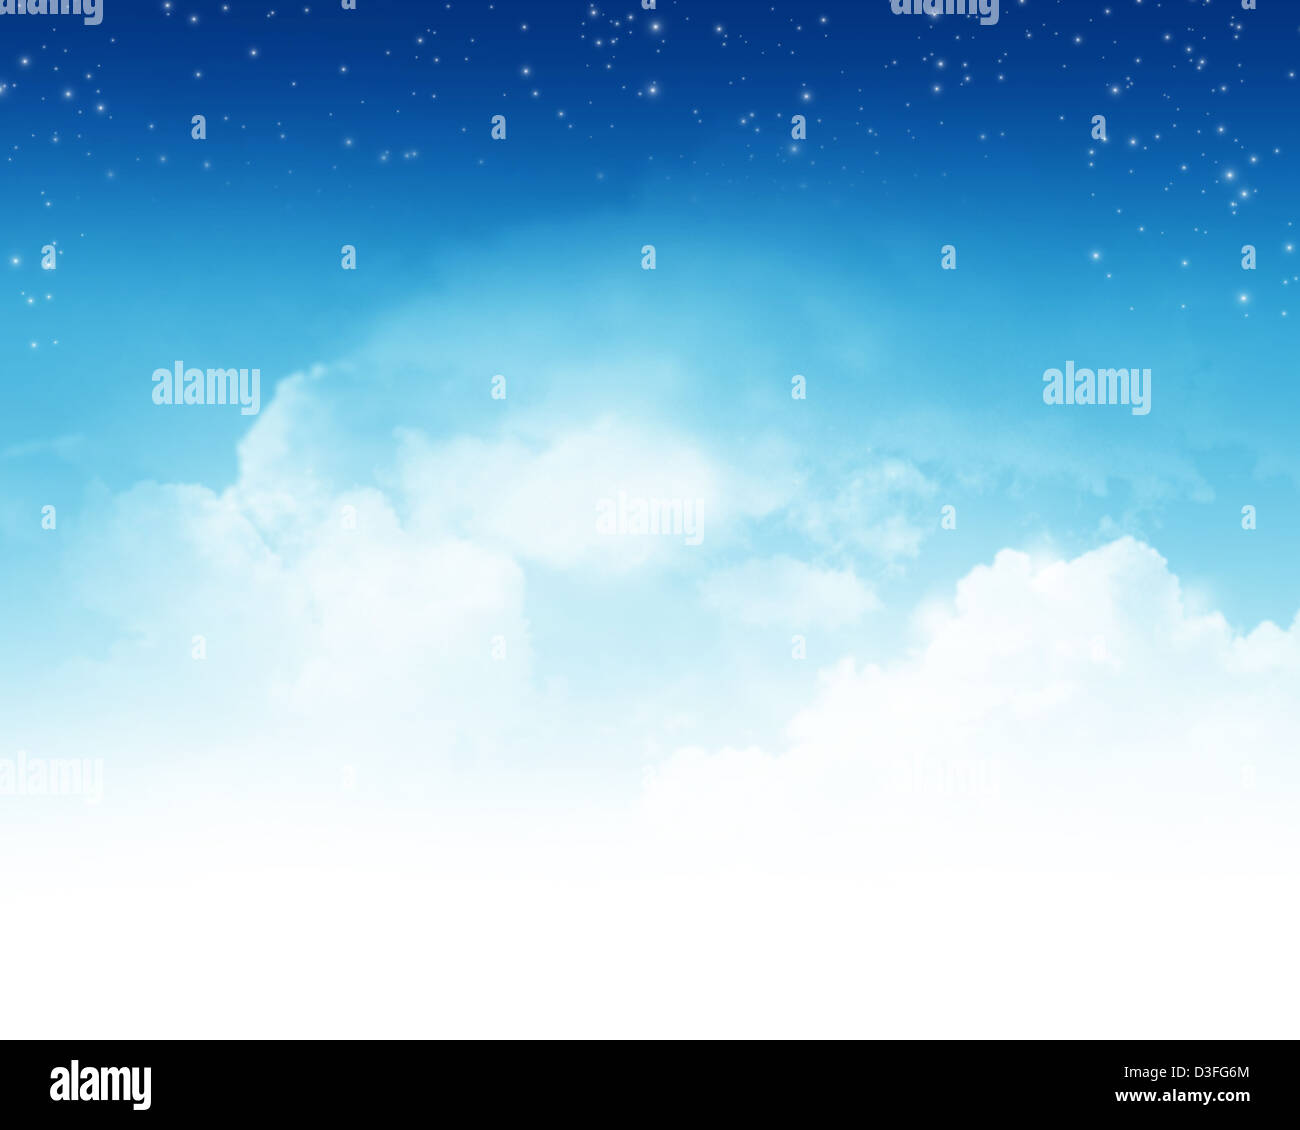 Ciel nuageux Ciel bleu avec étoile abstract background Banque D'Images